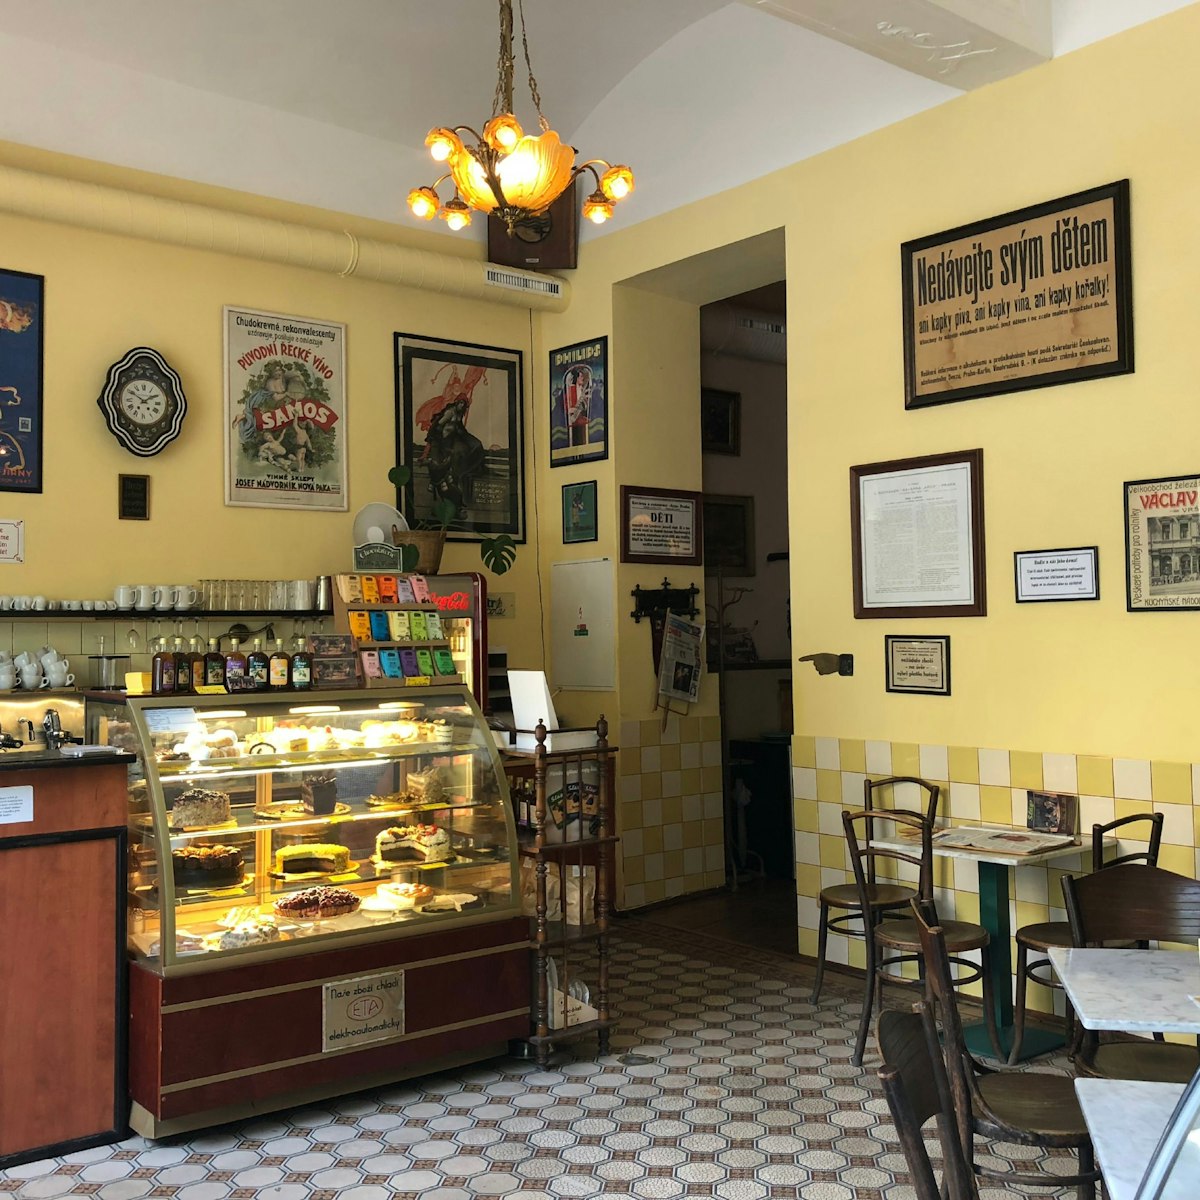 Kavárna Šlágr interior.